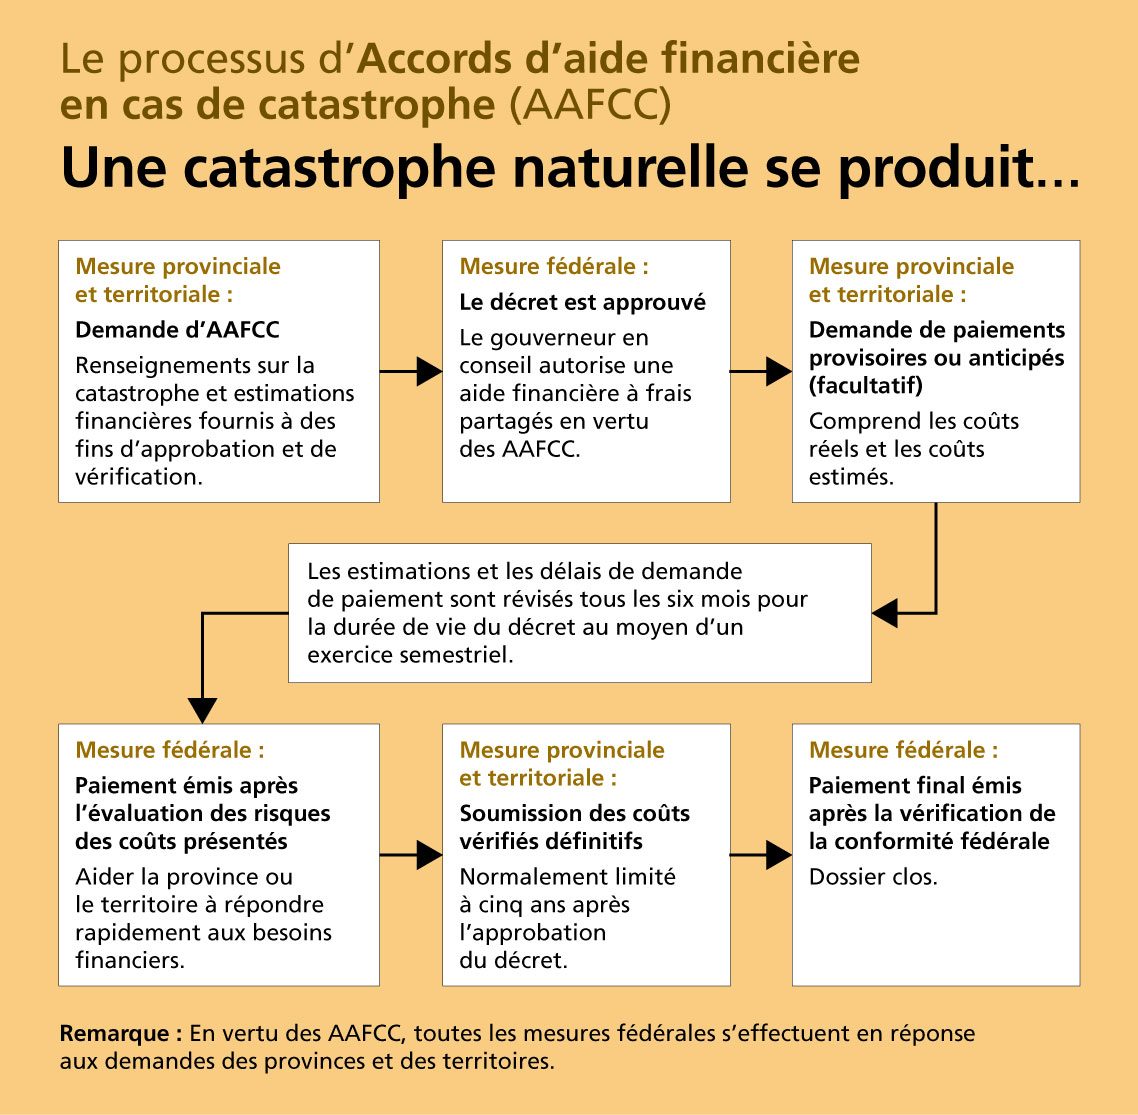 Organigramme du processus d’Accords d’aide financière en cas de catastrophe (AAFCC)